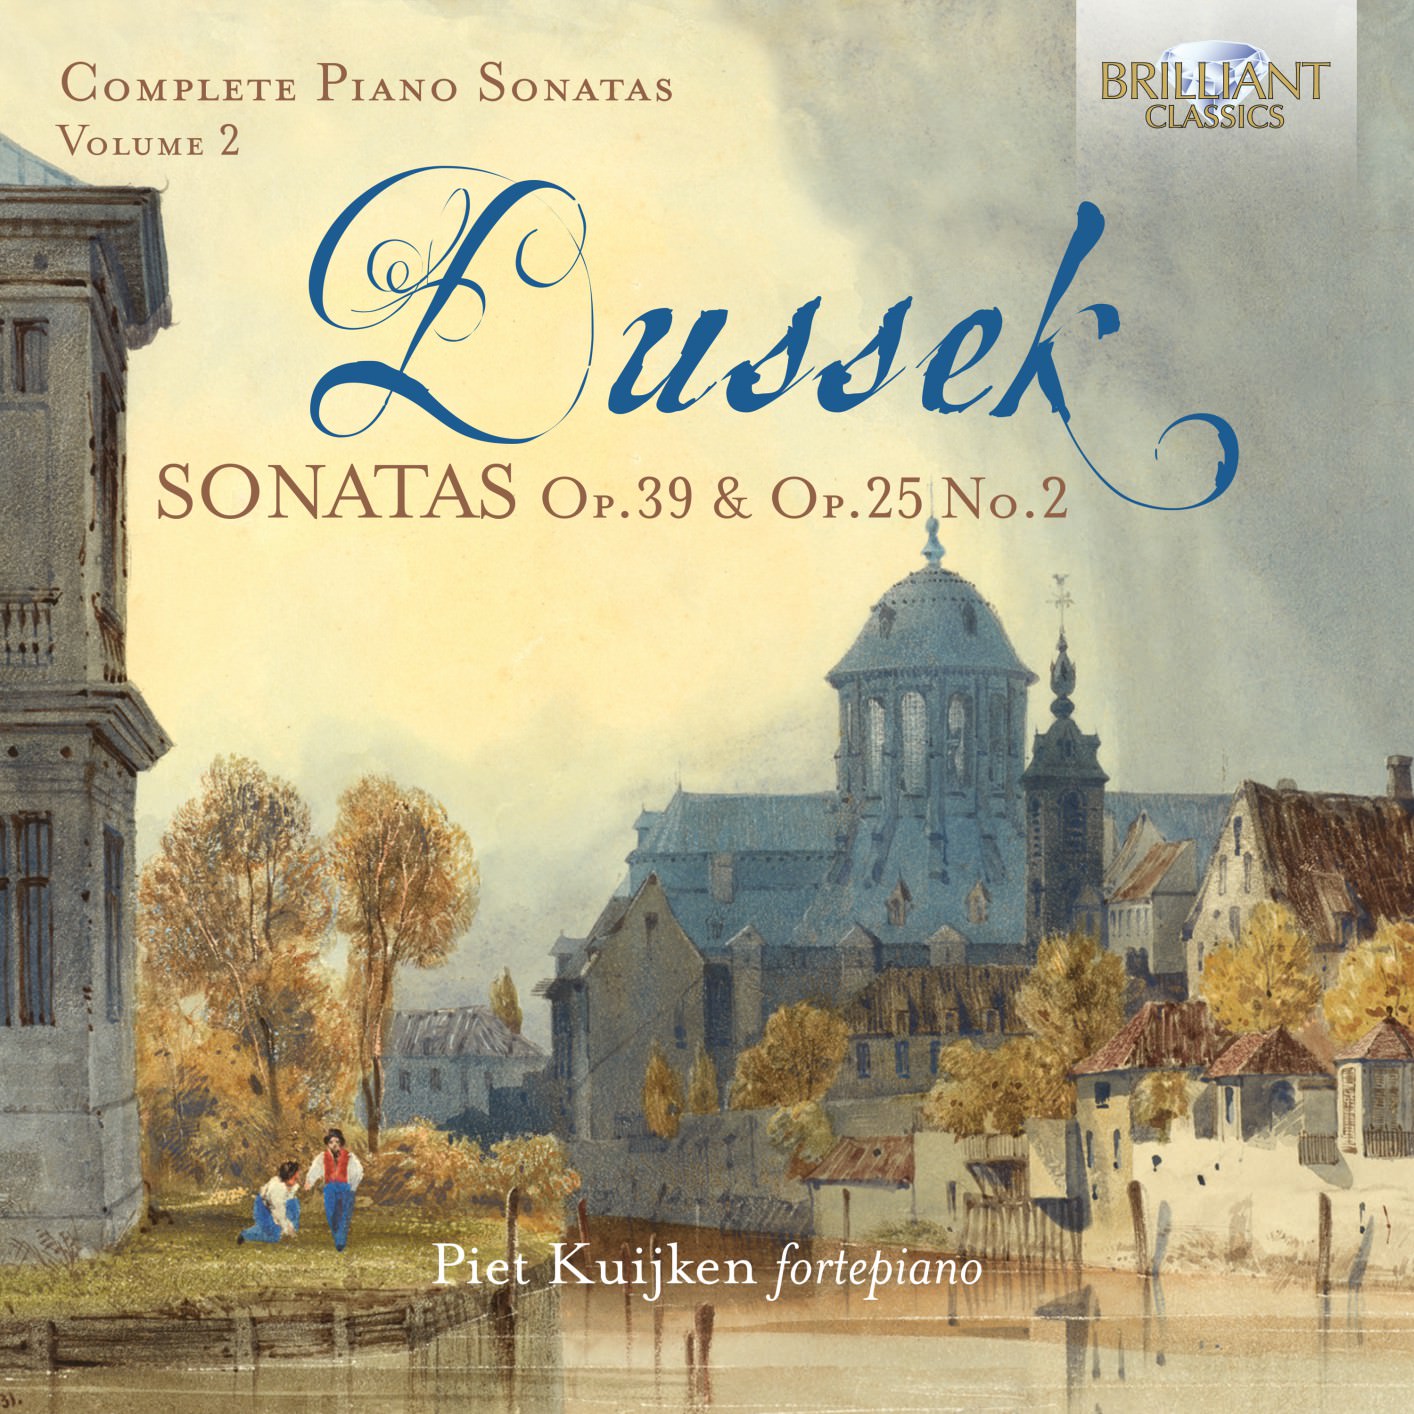 Piet Kuijken - Dussek: Sonatas, Op. 39 & Op.25 No.2 (2018) [FLAC 24bit/96kHz]